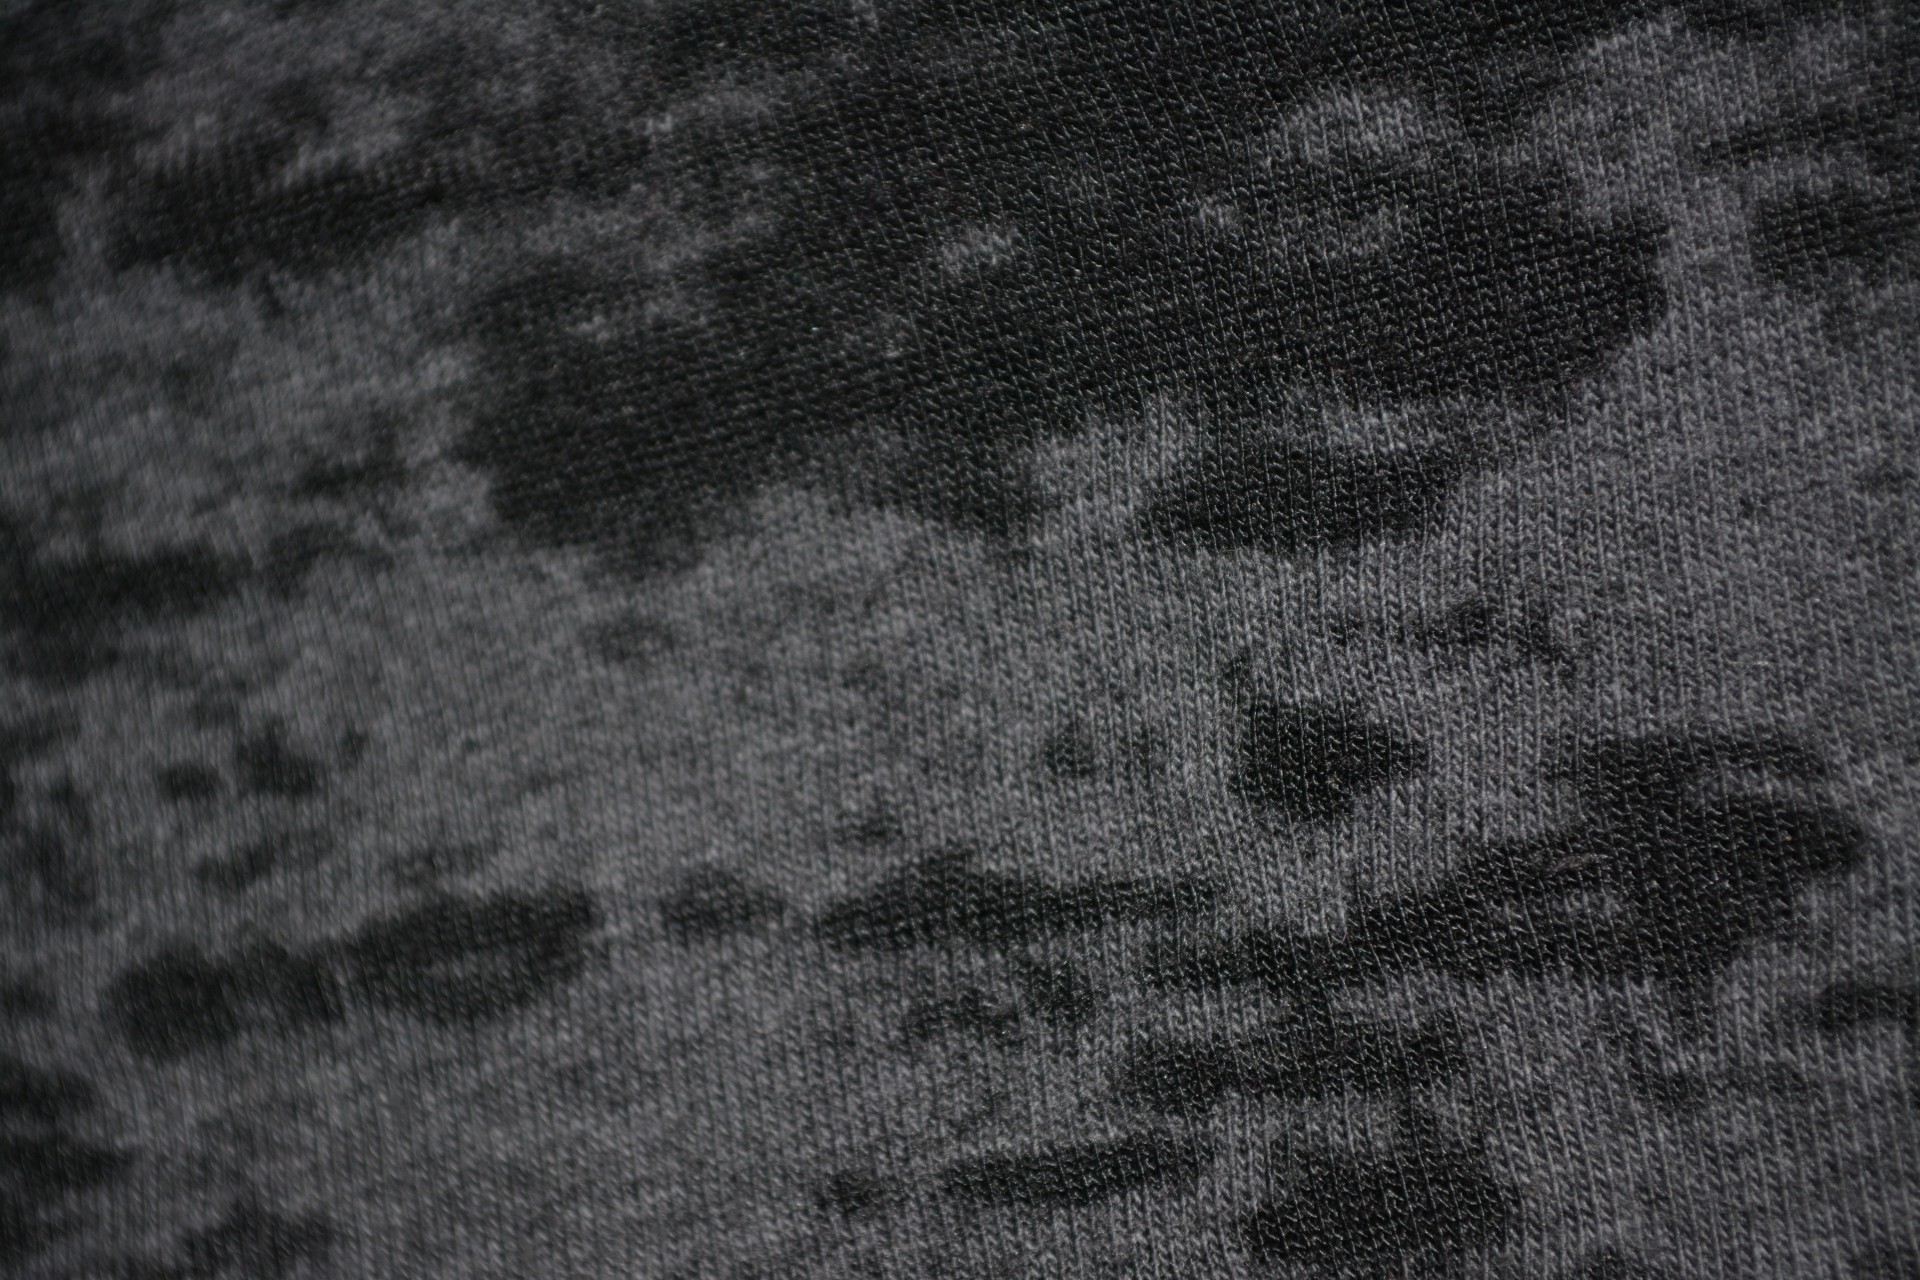 burnt cloth texture